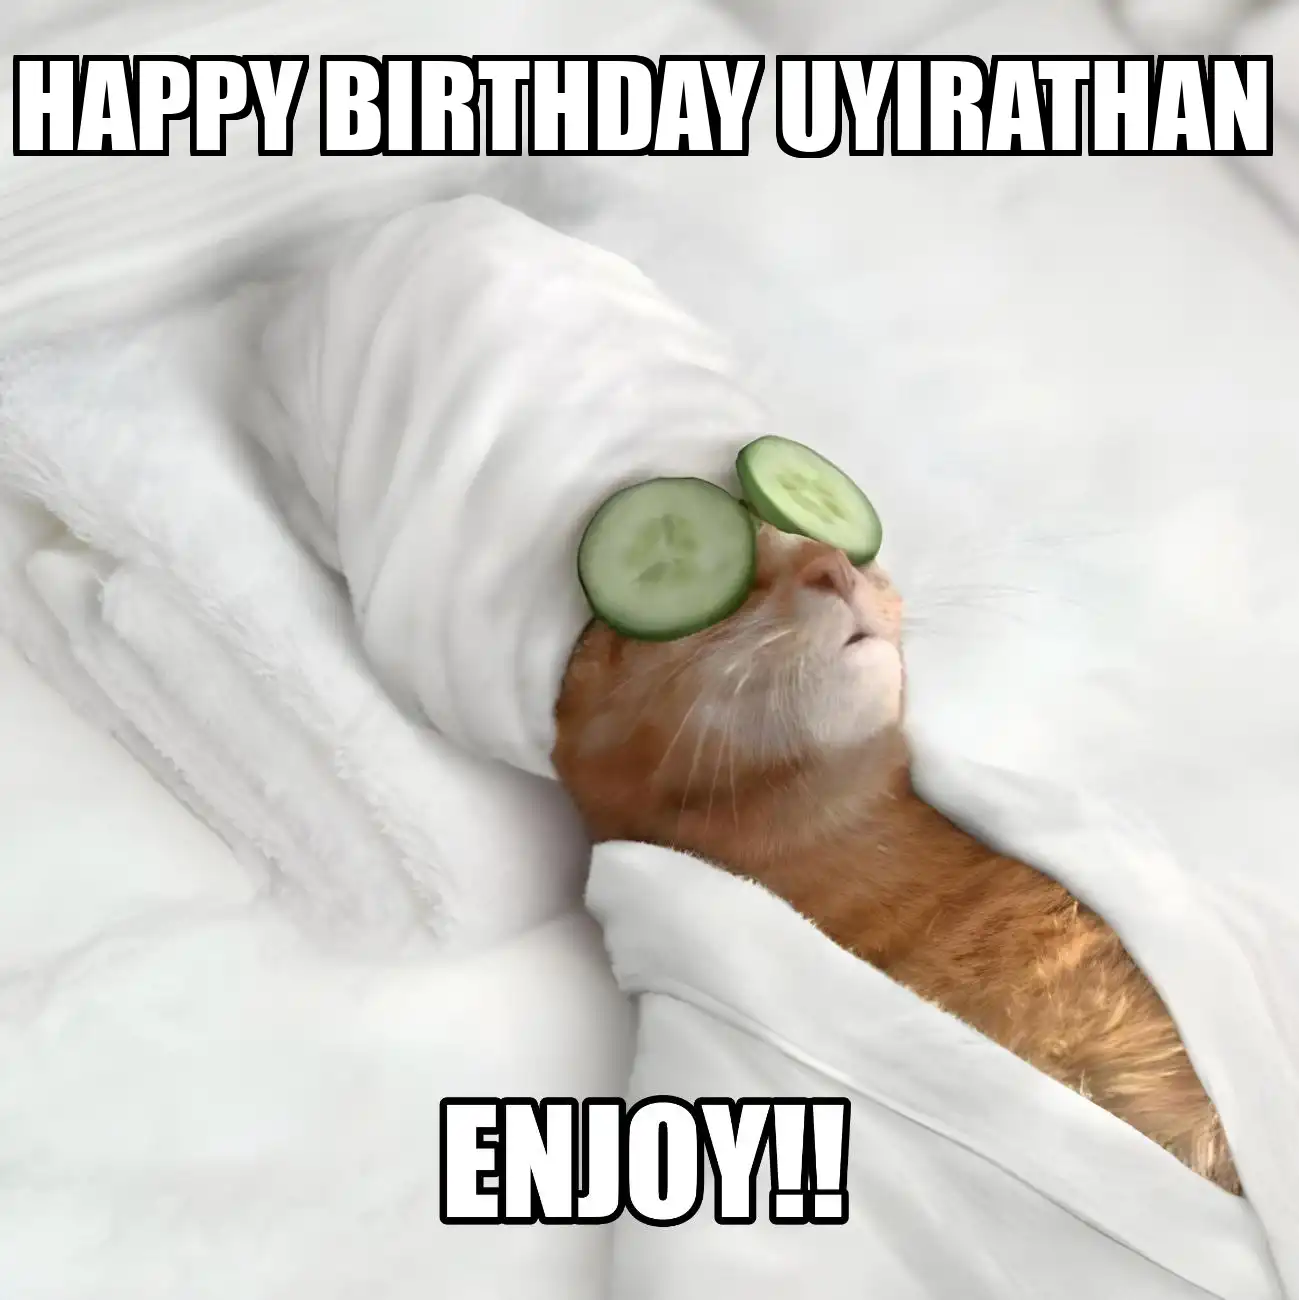 Happy Birthday Uyirathan Enjoy Cat Meme